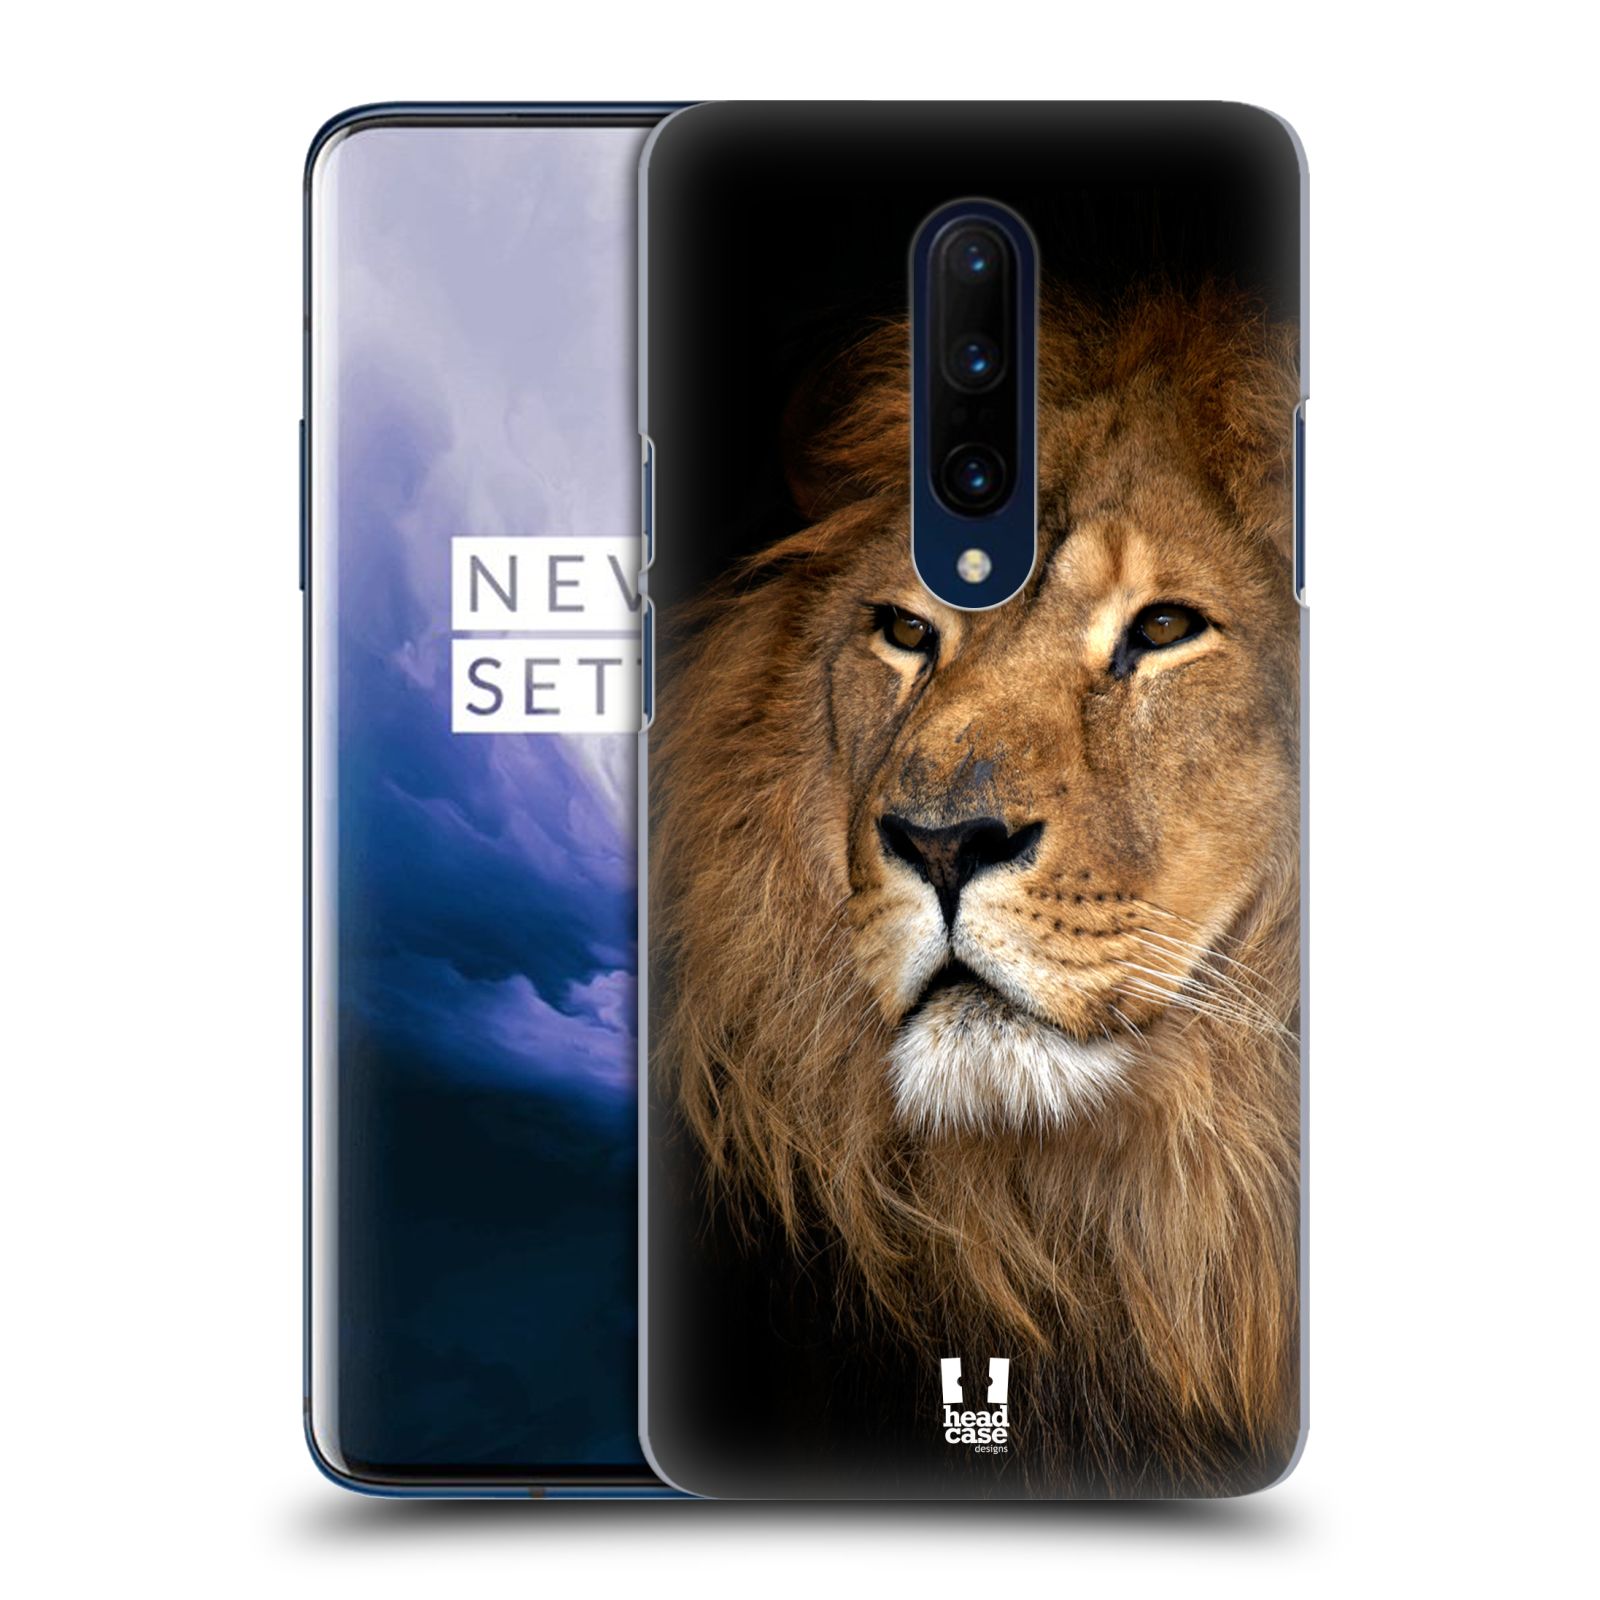 Zadní obal pro mobil OnePlus 7 PRO - HEAD CASE - Svět zvířat král zvířat Lev